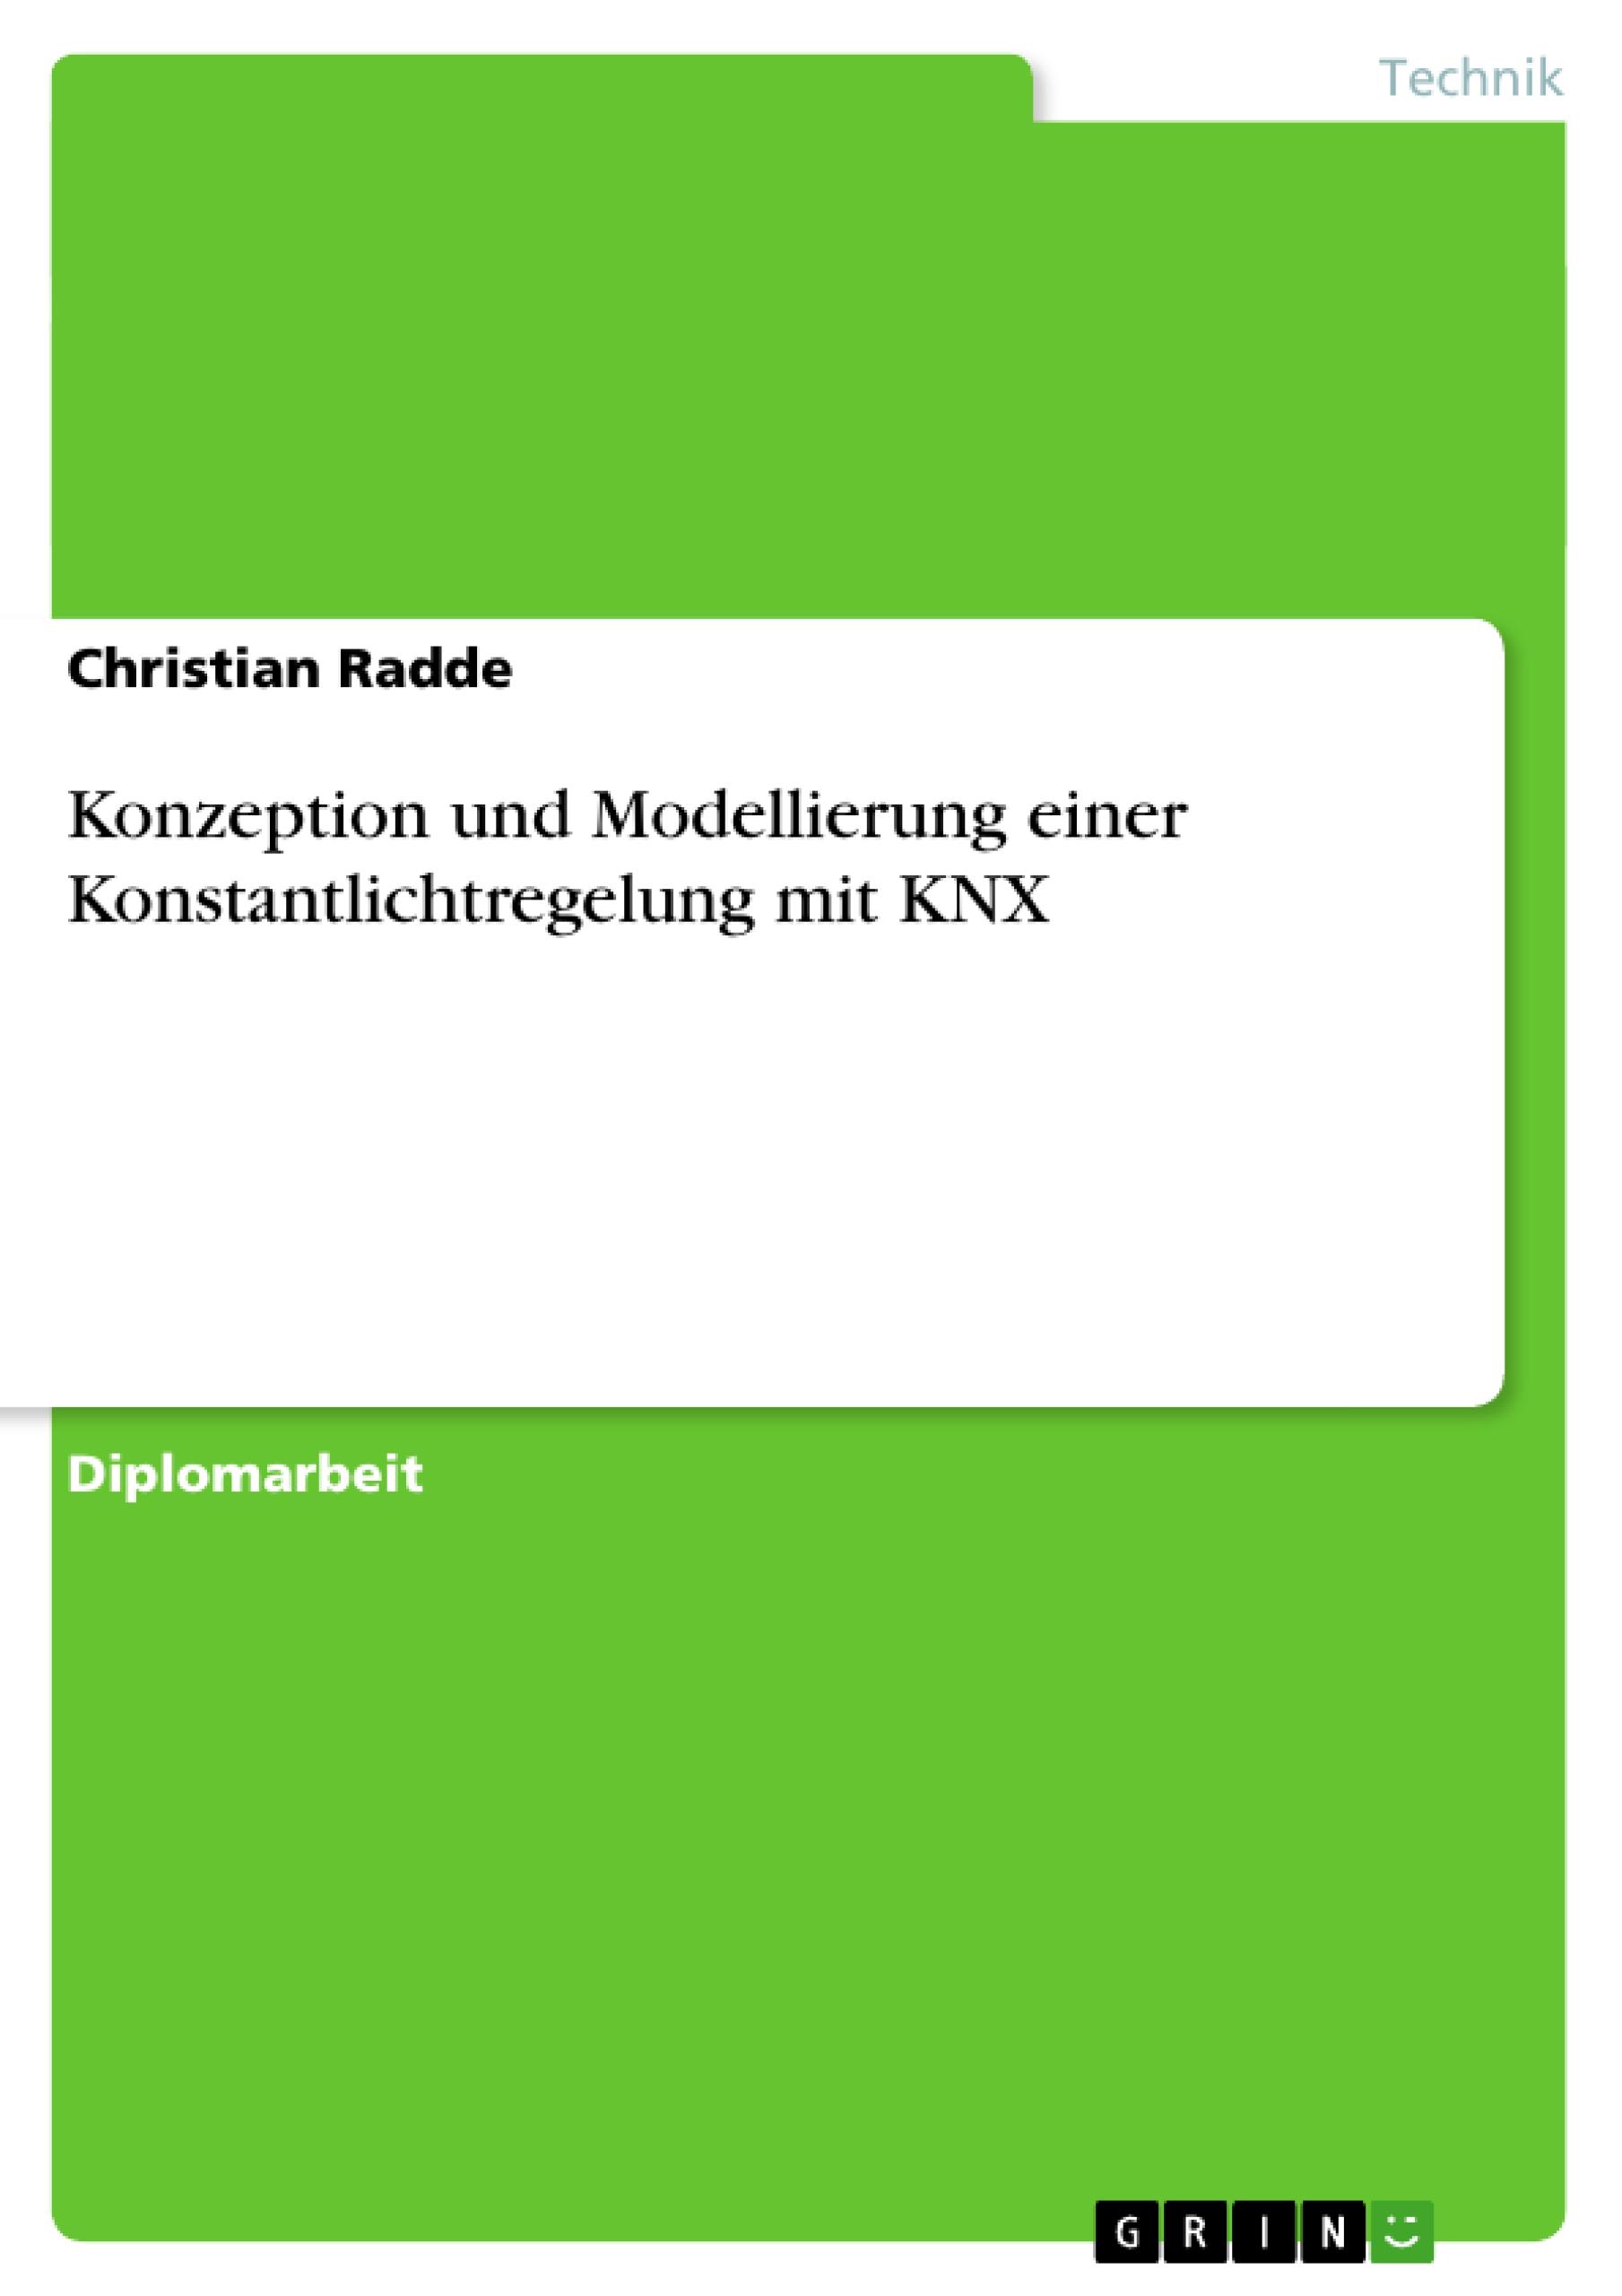 Konzeption und Modellierung einer Konstantlichtregelung mit KNX - Radde, Christian